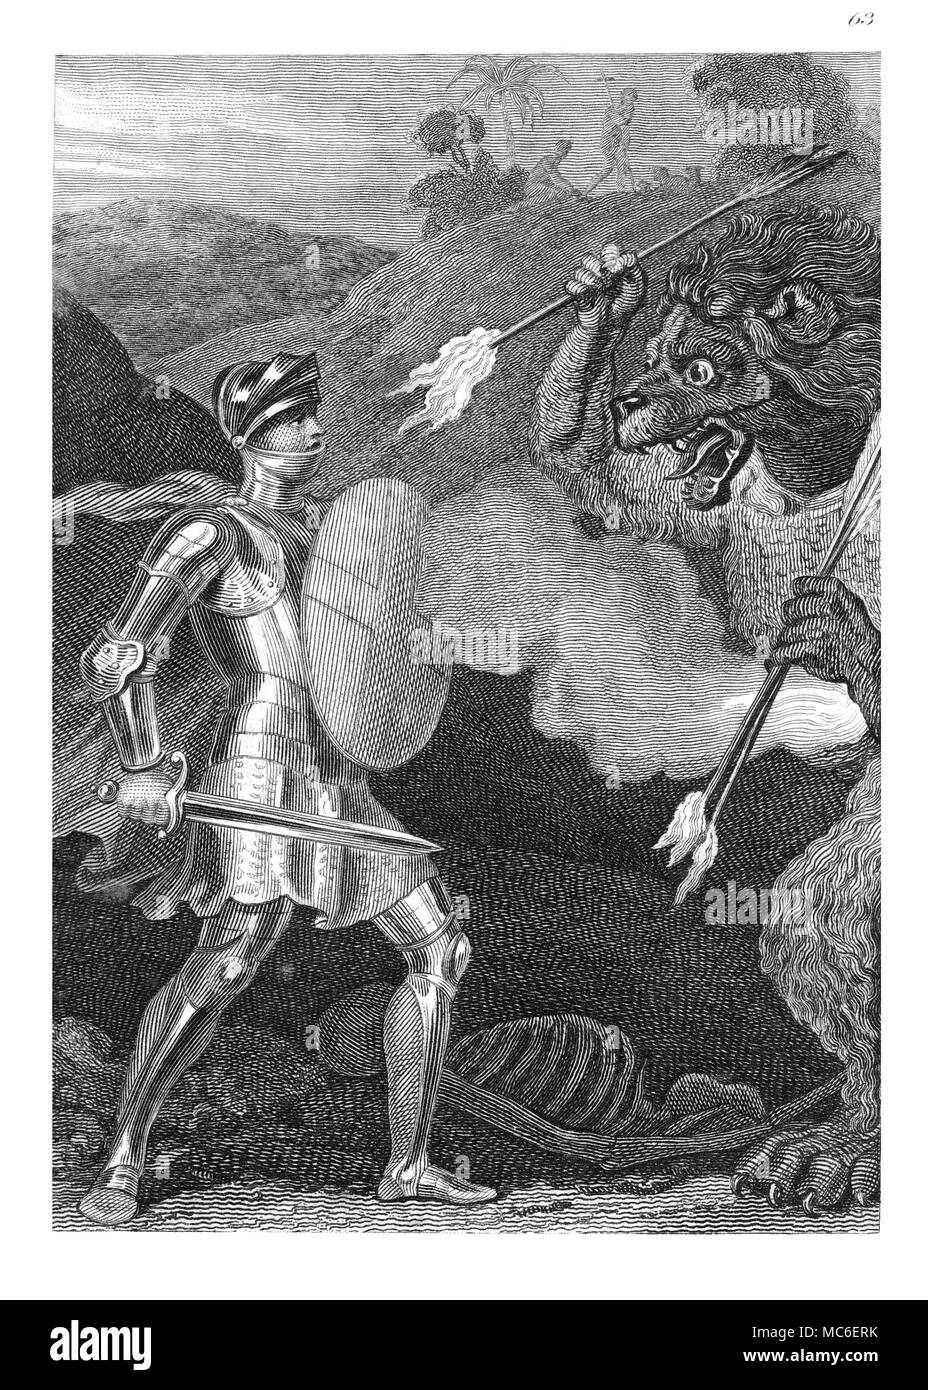 Démons gravure par McGahey d'un dessin par W.M. Craig, comme illustration de Bunyan de pèlerin du progrès. Le démon est sous la forme d'un lion sauvage. Banque D'Images